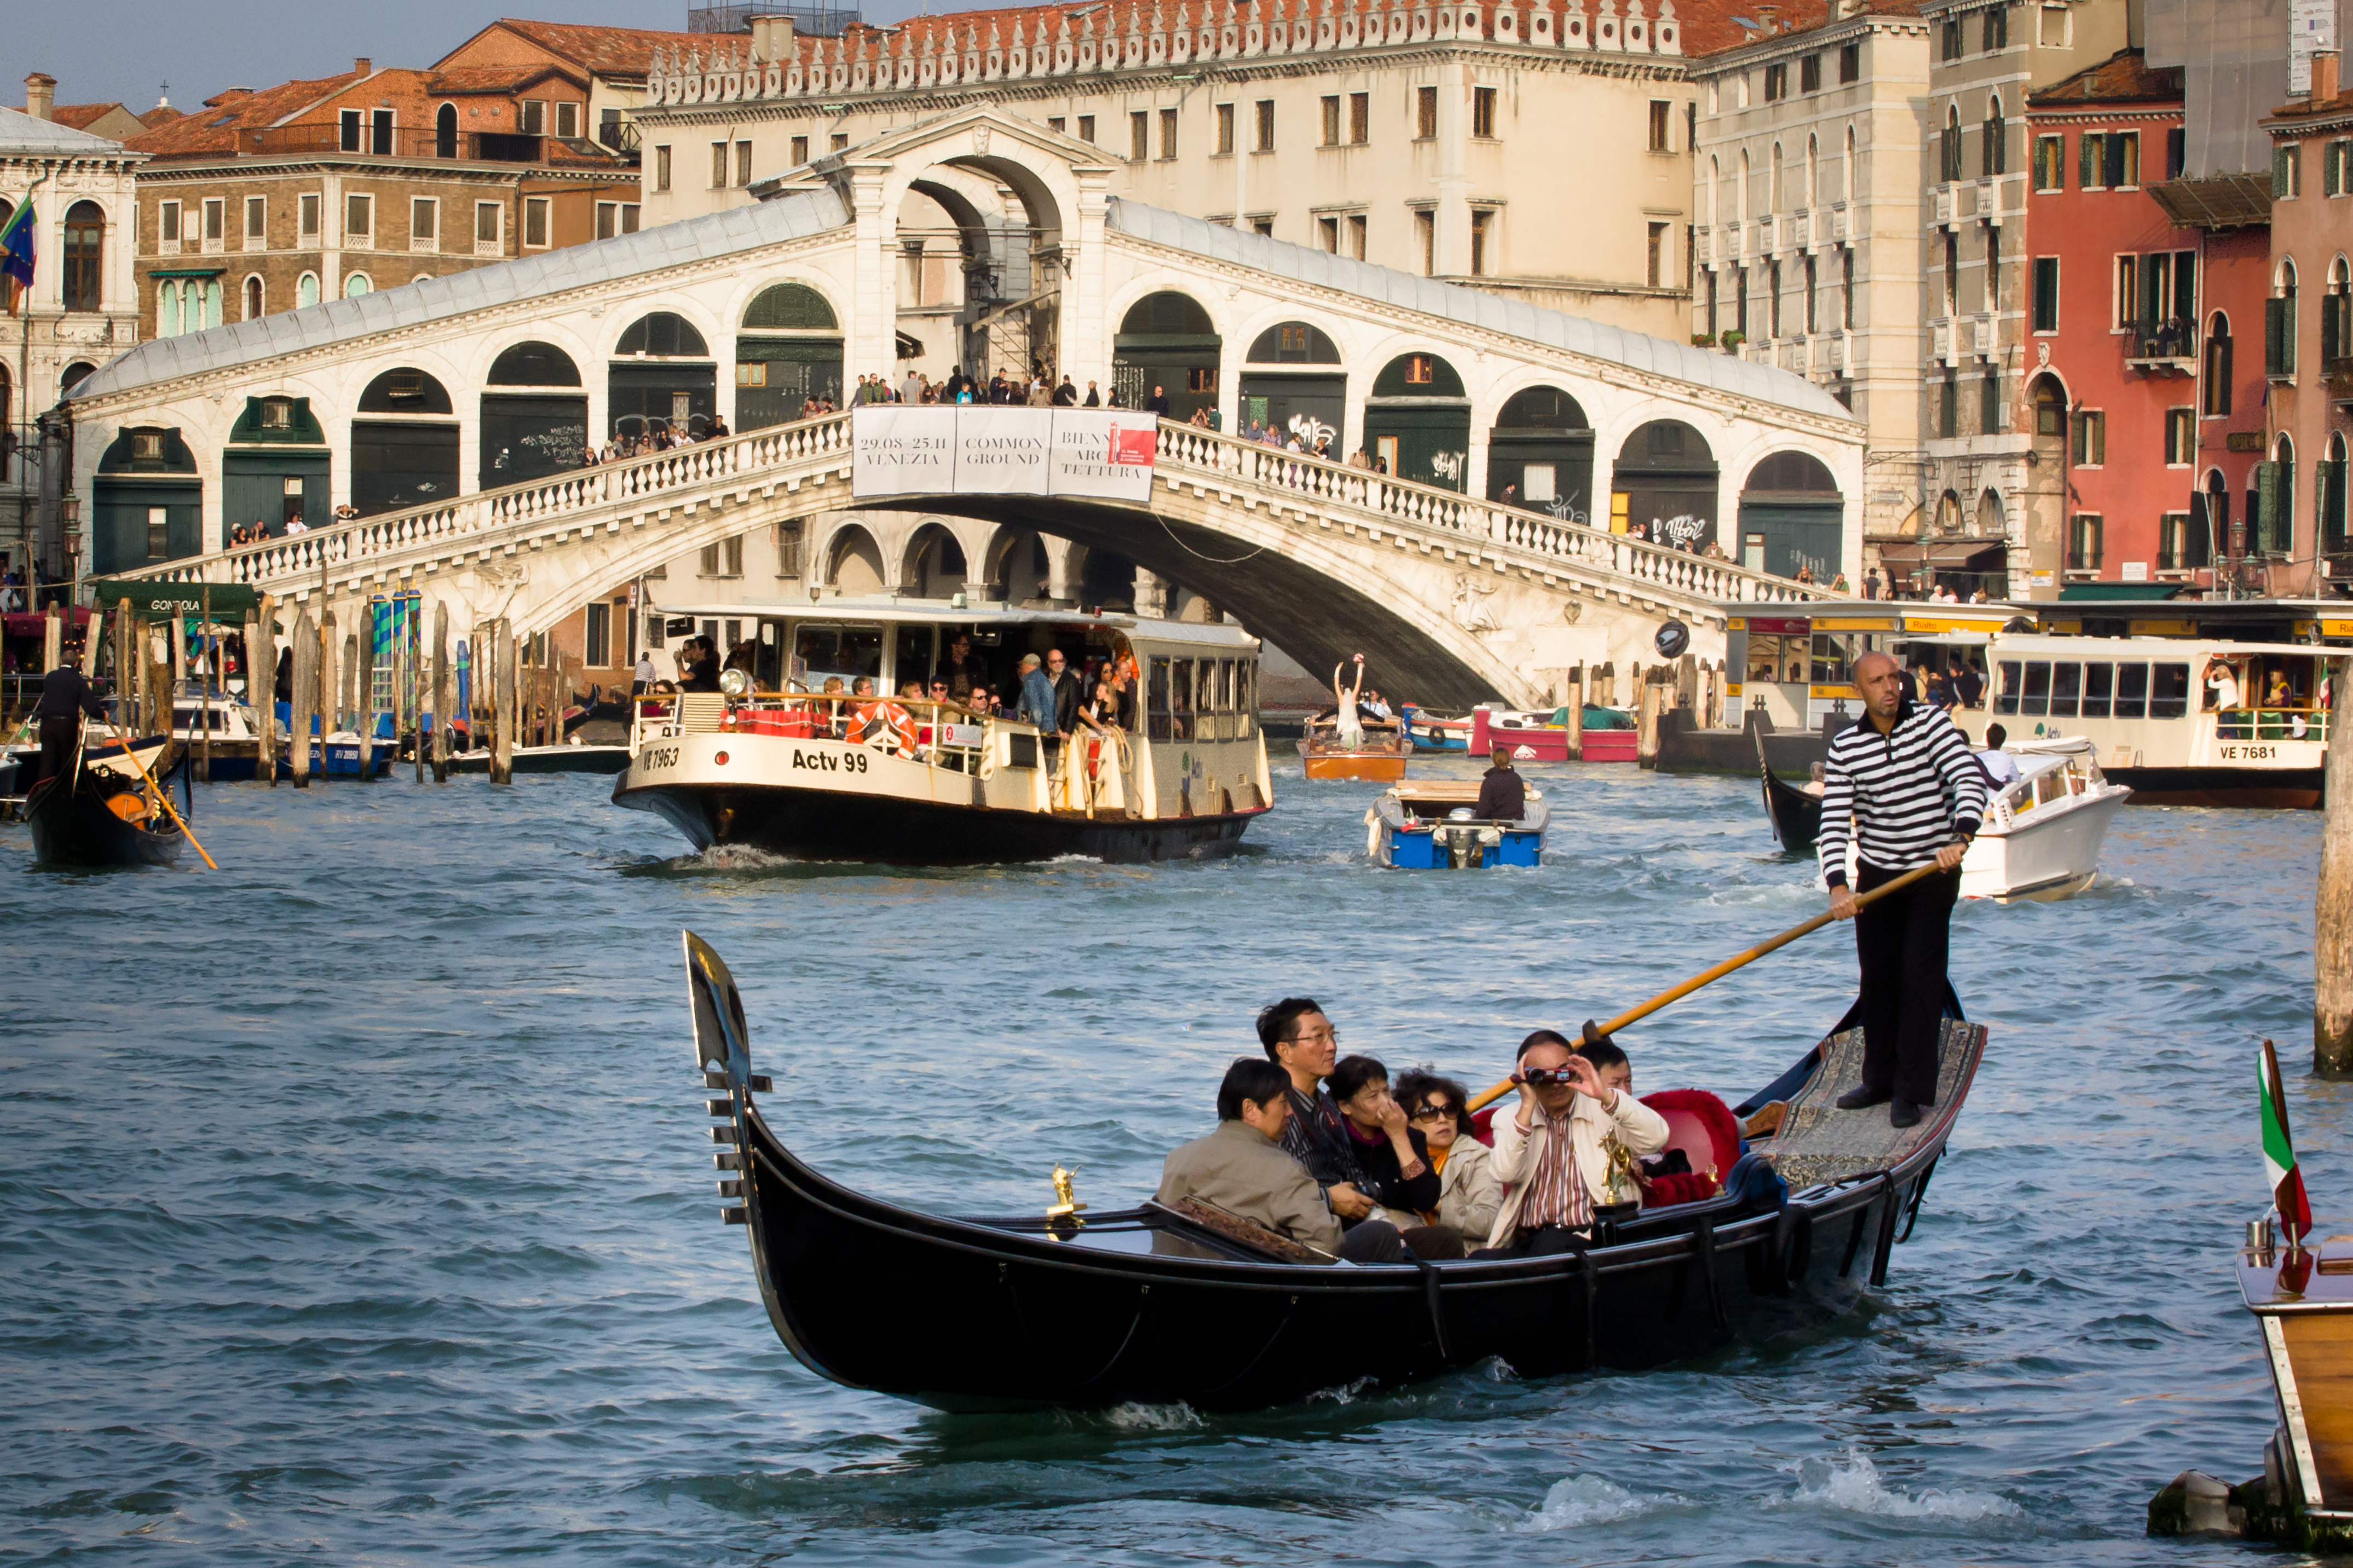 Удивительный город венеция. Венеция Италия. Италия туризм Венеция. Венеция. Гондолы. Венеция Италия достопримечательности.